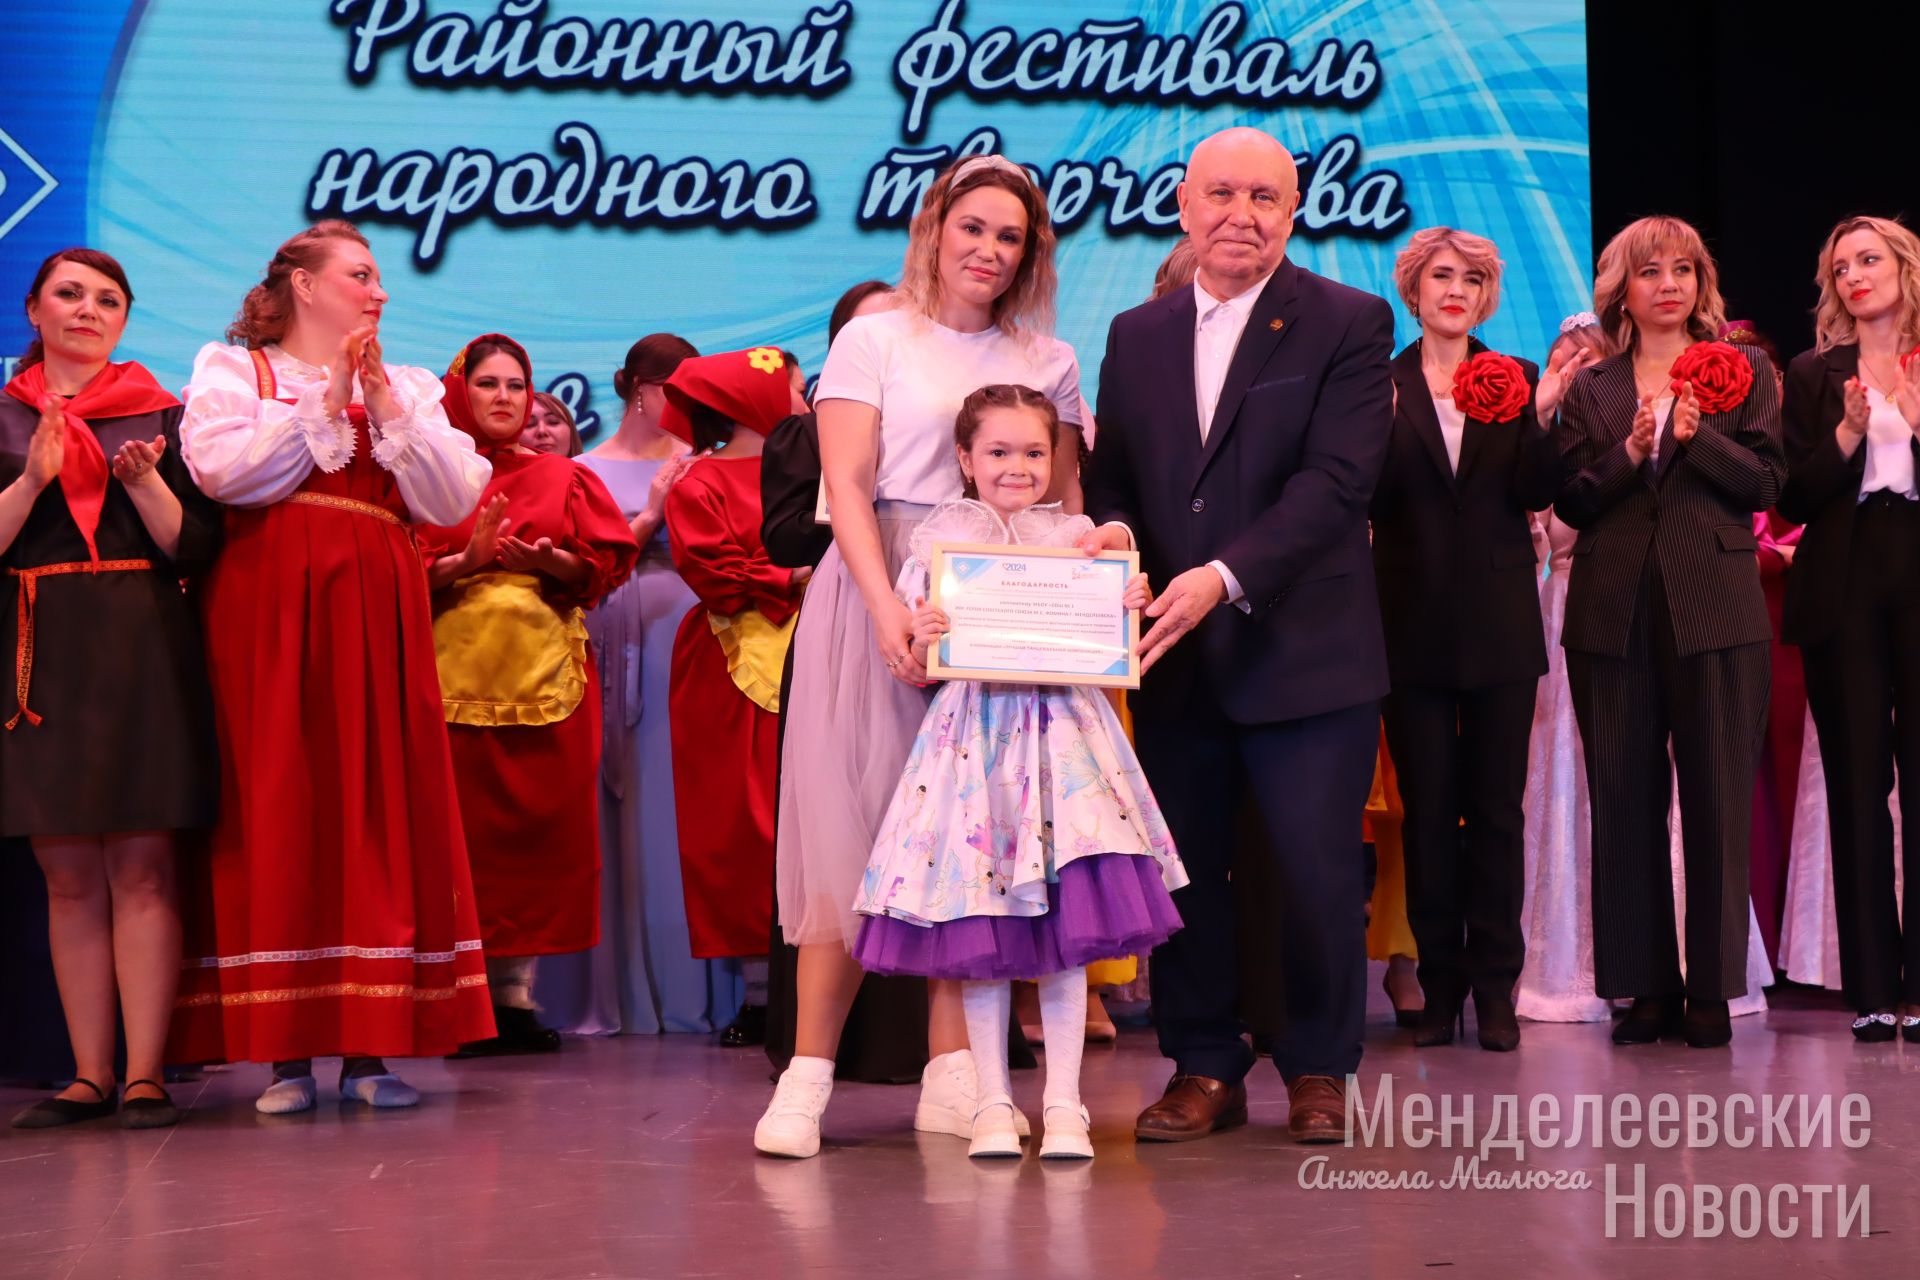 Коллективы учреждений образования Менделеевска продемонстрировали свои таланты на районном фестивале народного творчества